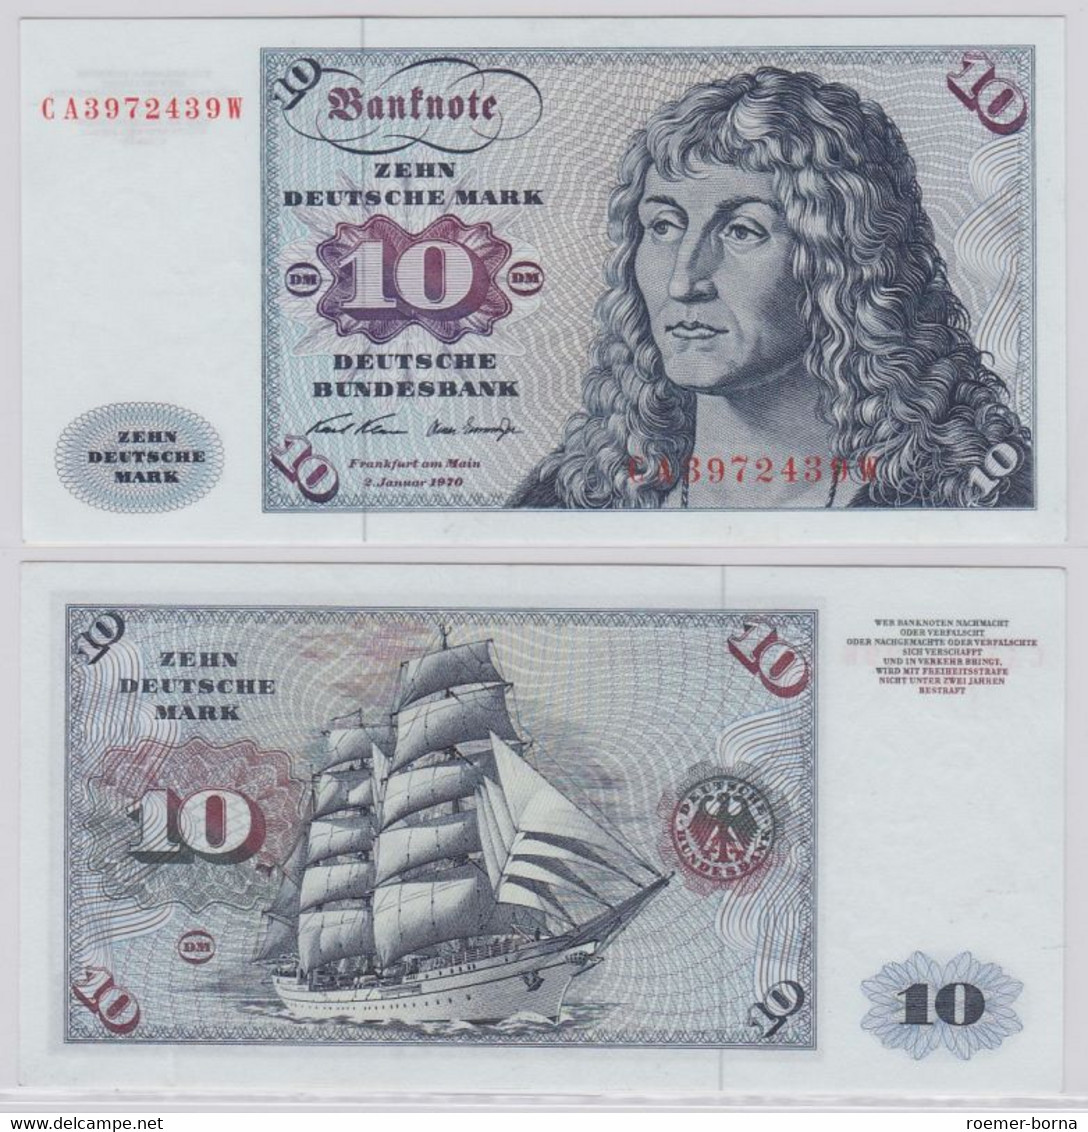 T146190 Banknote 10 DM Deutsche Mark Ro. 270a Schein 2.Jan. 1970 KN CA 3972439 W - 10 Deutsche Mark